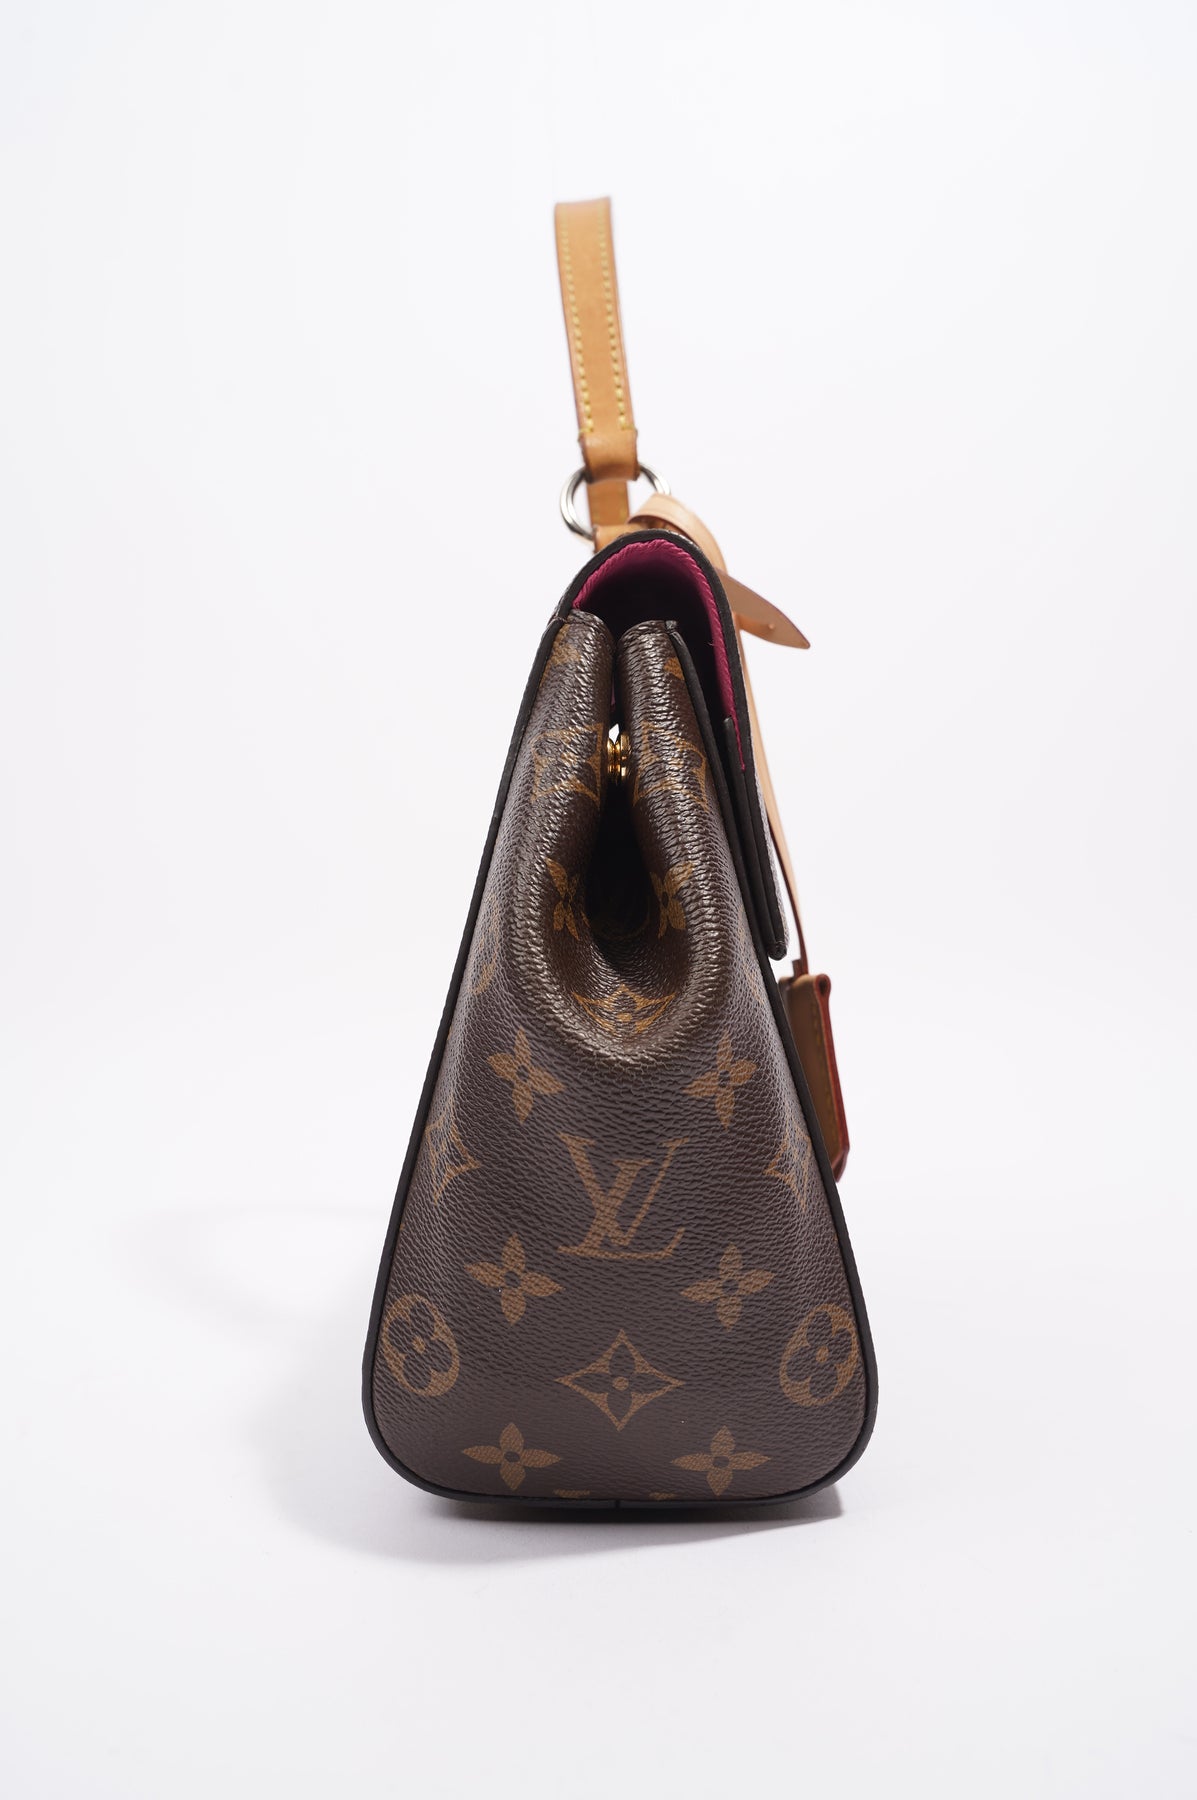 Louis Vuitton Cluny BB Monogramme. Etat Neuf ! - IconPrincess